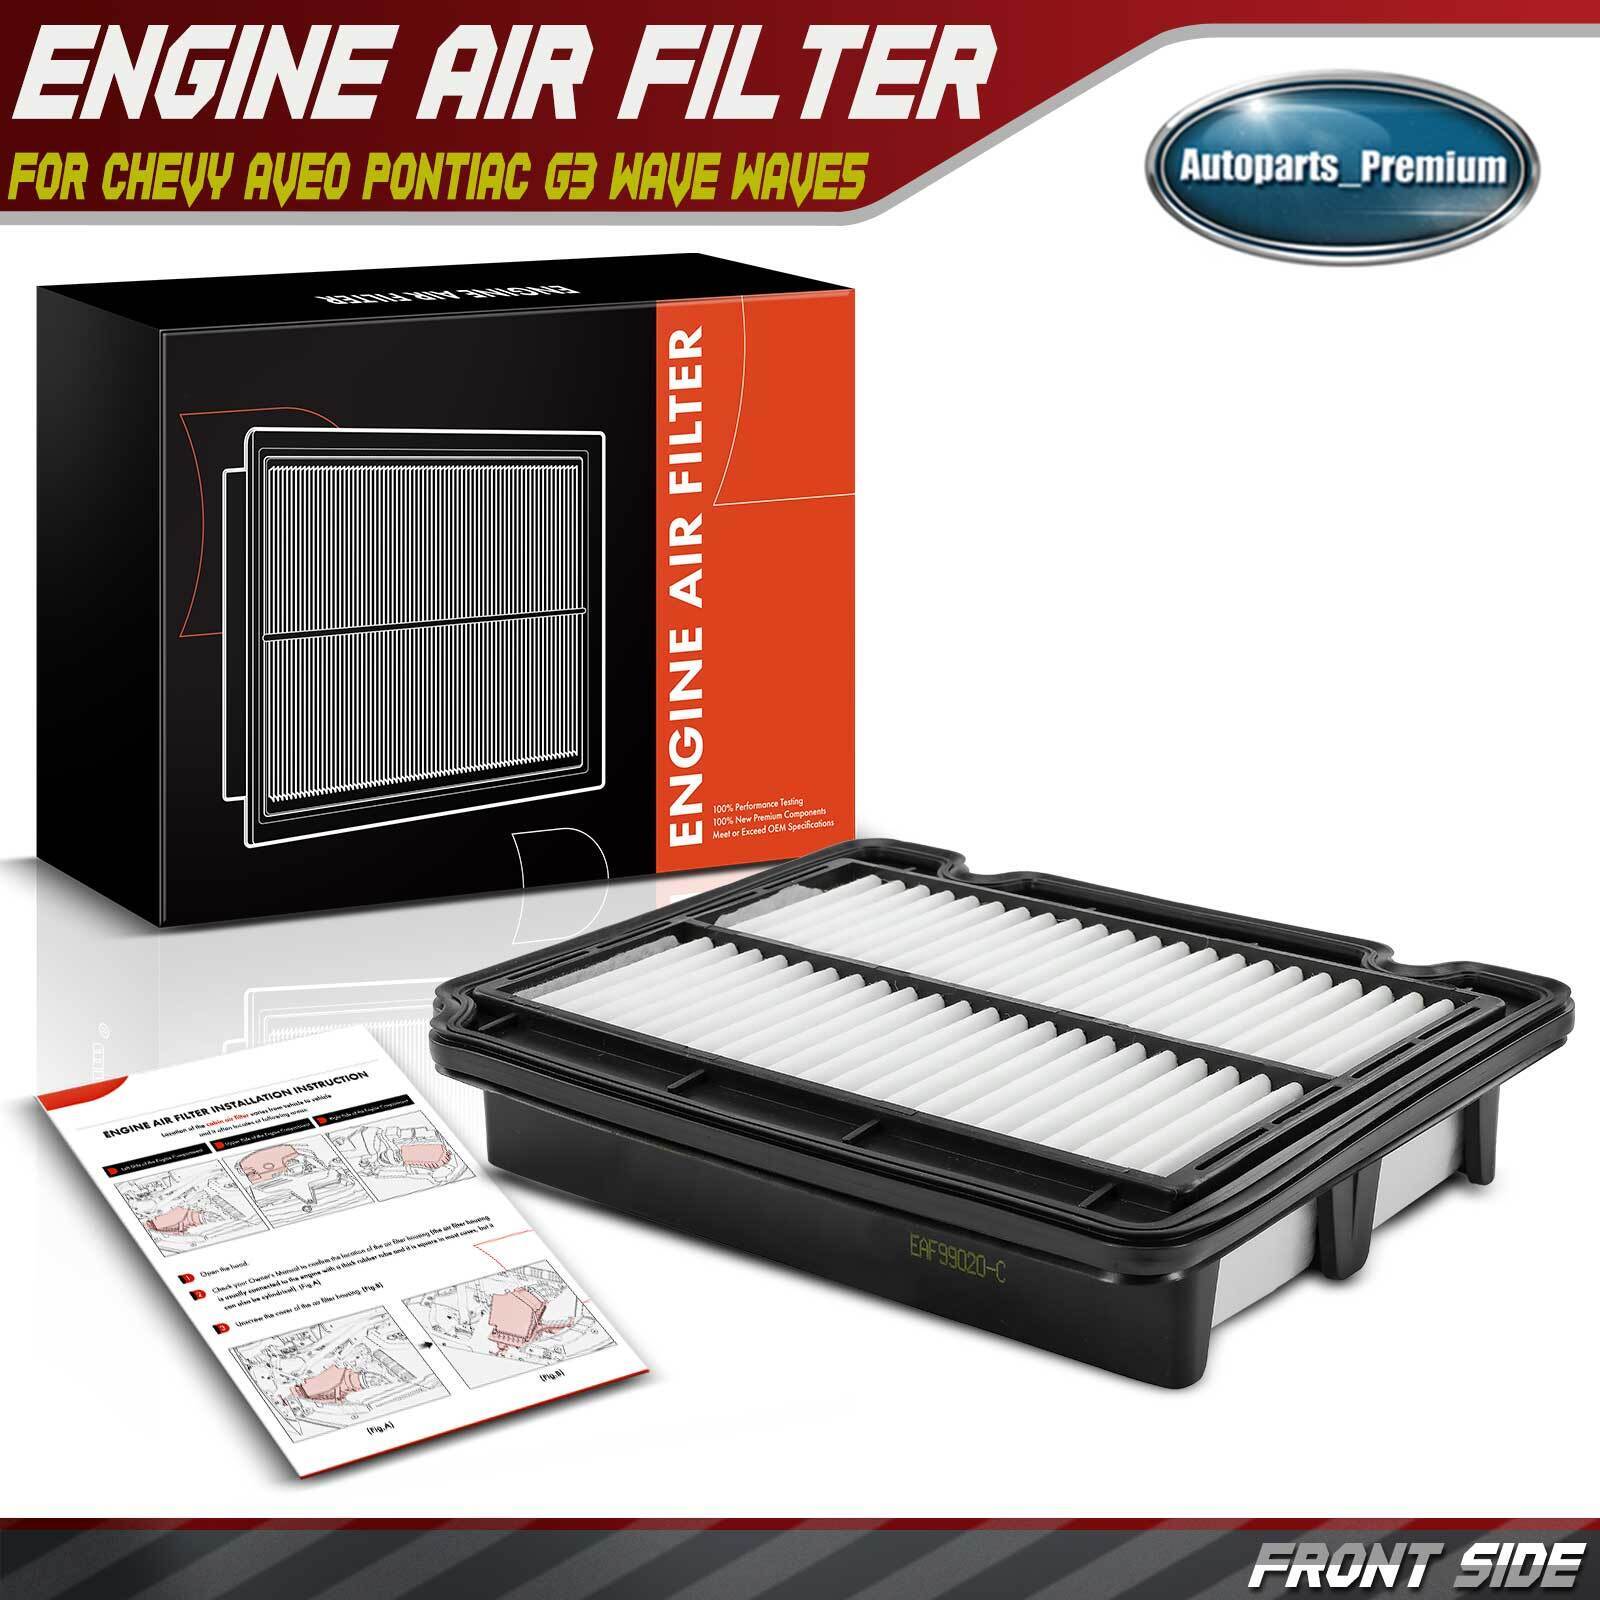 Engine Air Filter for Chevrolet Aveo Pontiac G3 G3 Wave Wave Wave5 Suzuki Swift